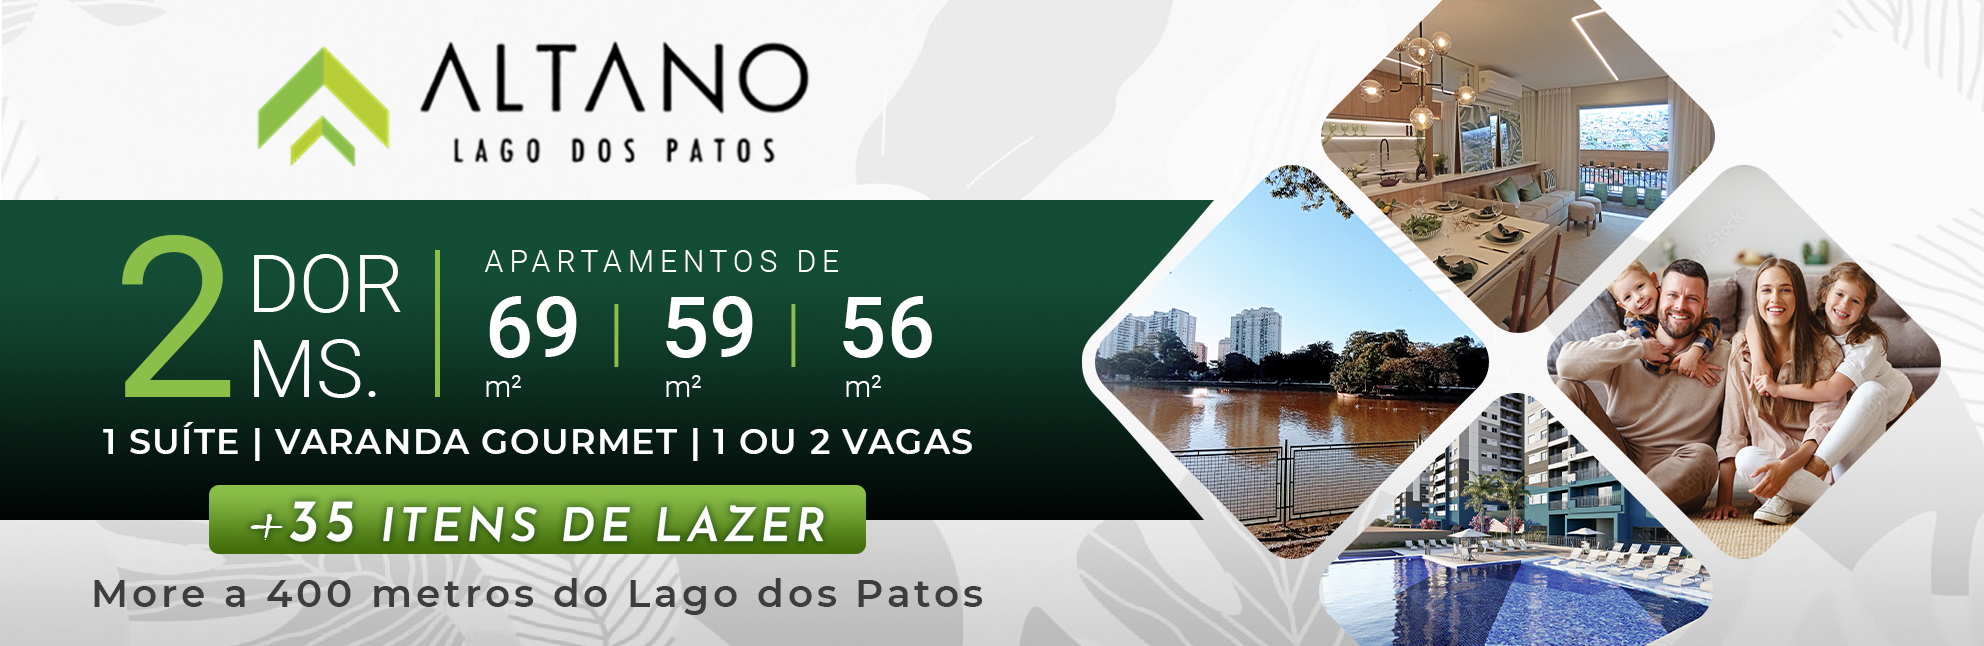 Altano Lago dos Patos | Apartamentos de 69m² & 59m² com 2 Dorms | 1 Suíte | Varanda Gourmet | 1 ou 2 Vagas de Garagem